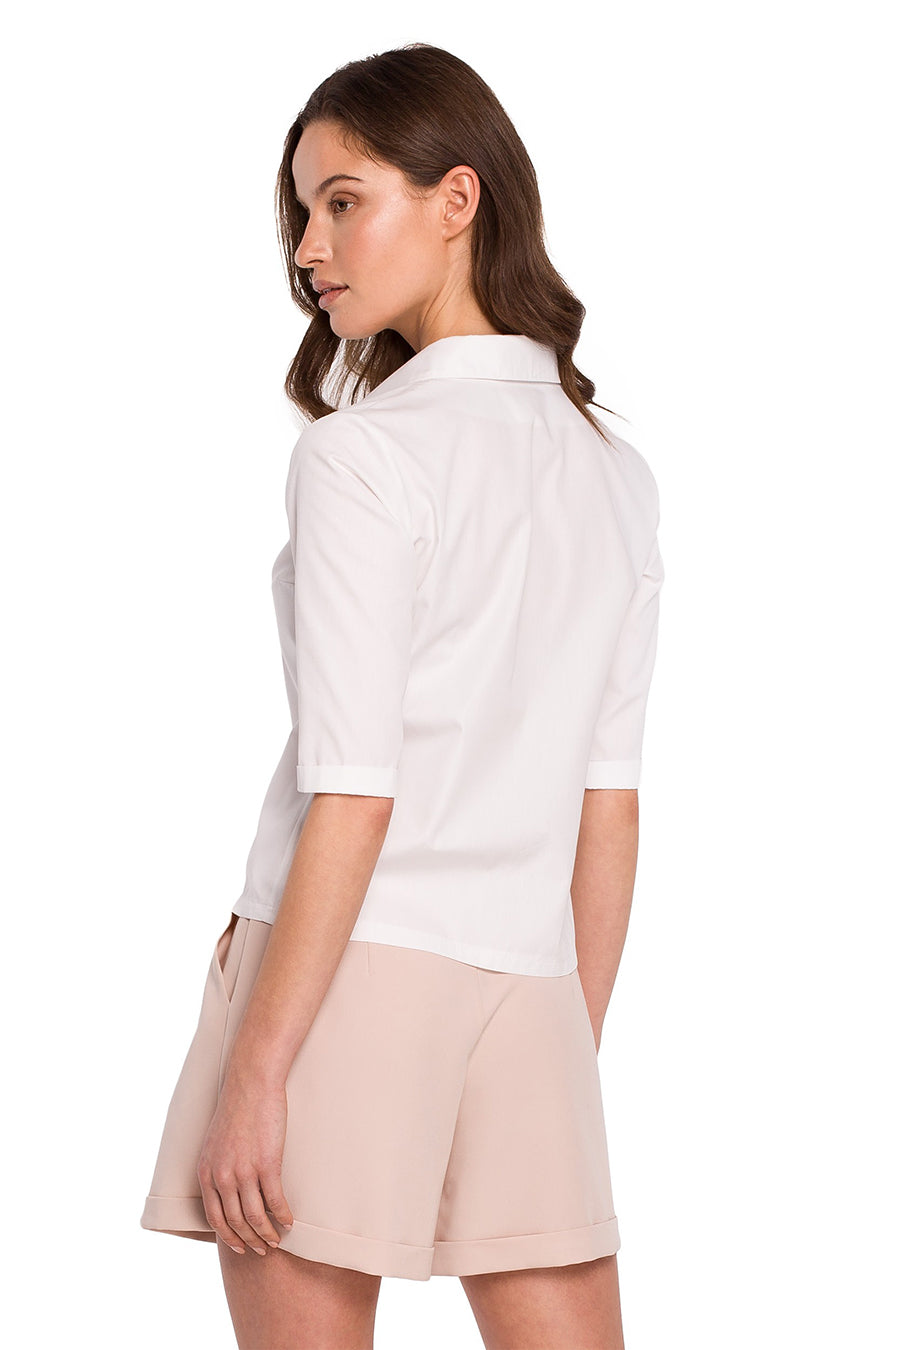 Γυναικείο πουκάμισο Aruna, Λευκό 4